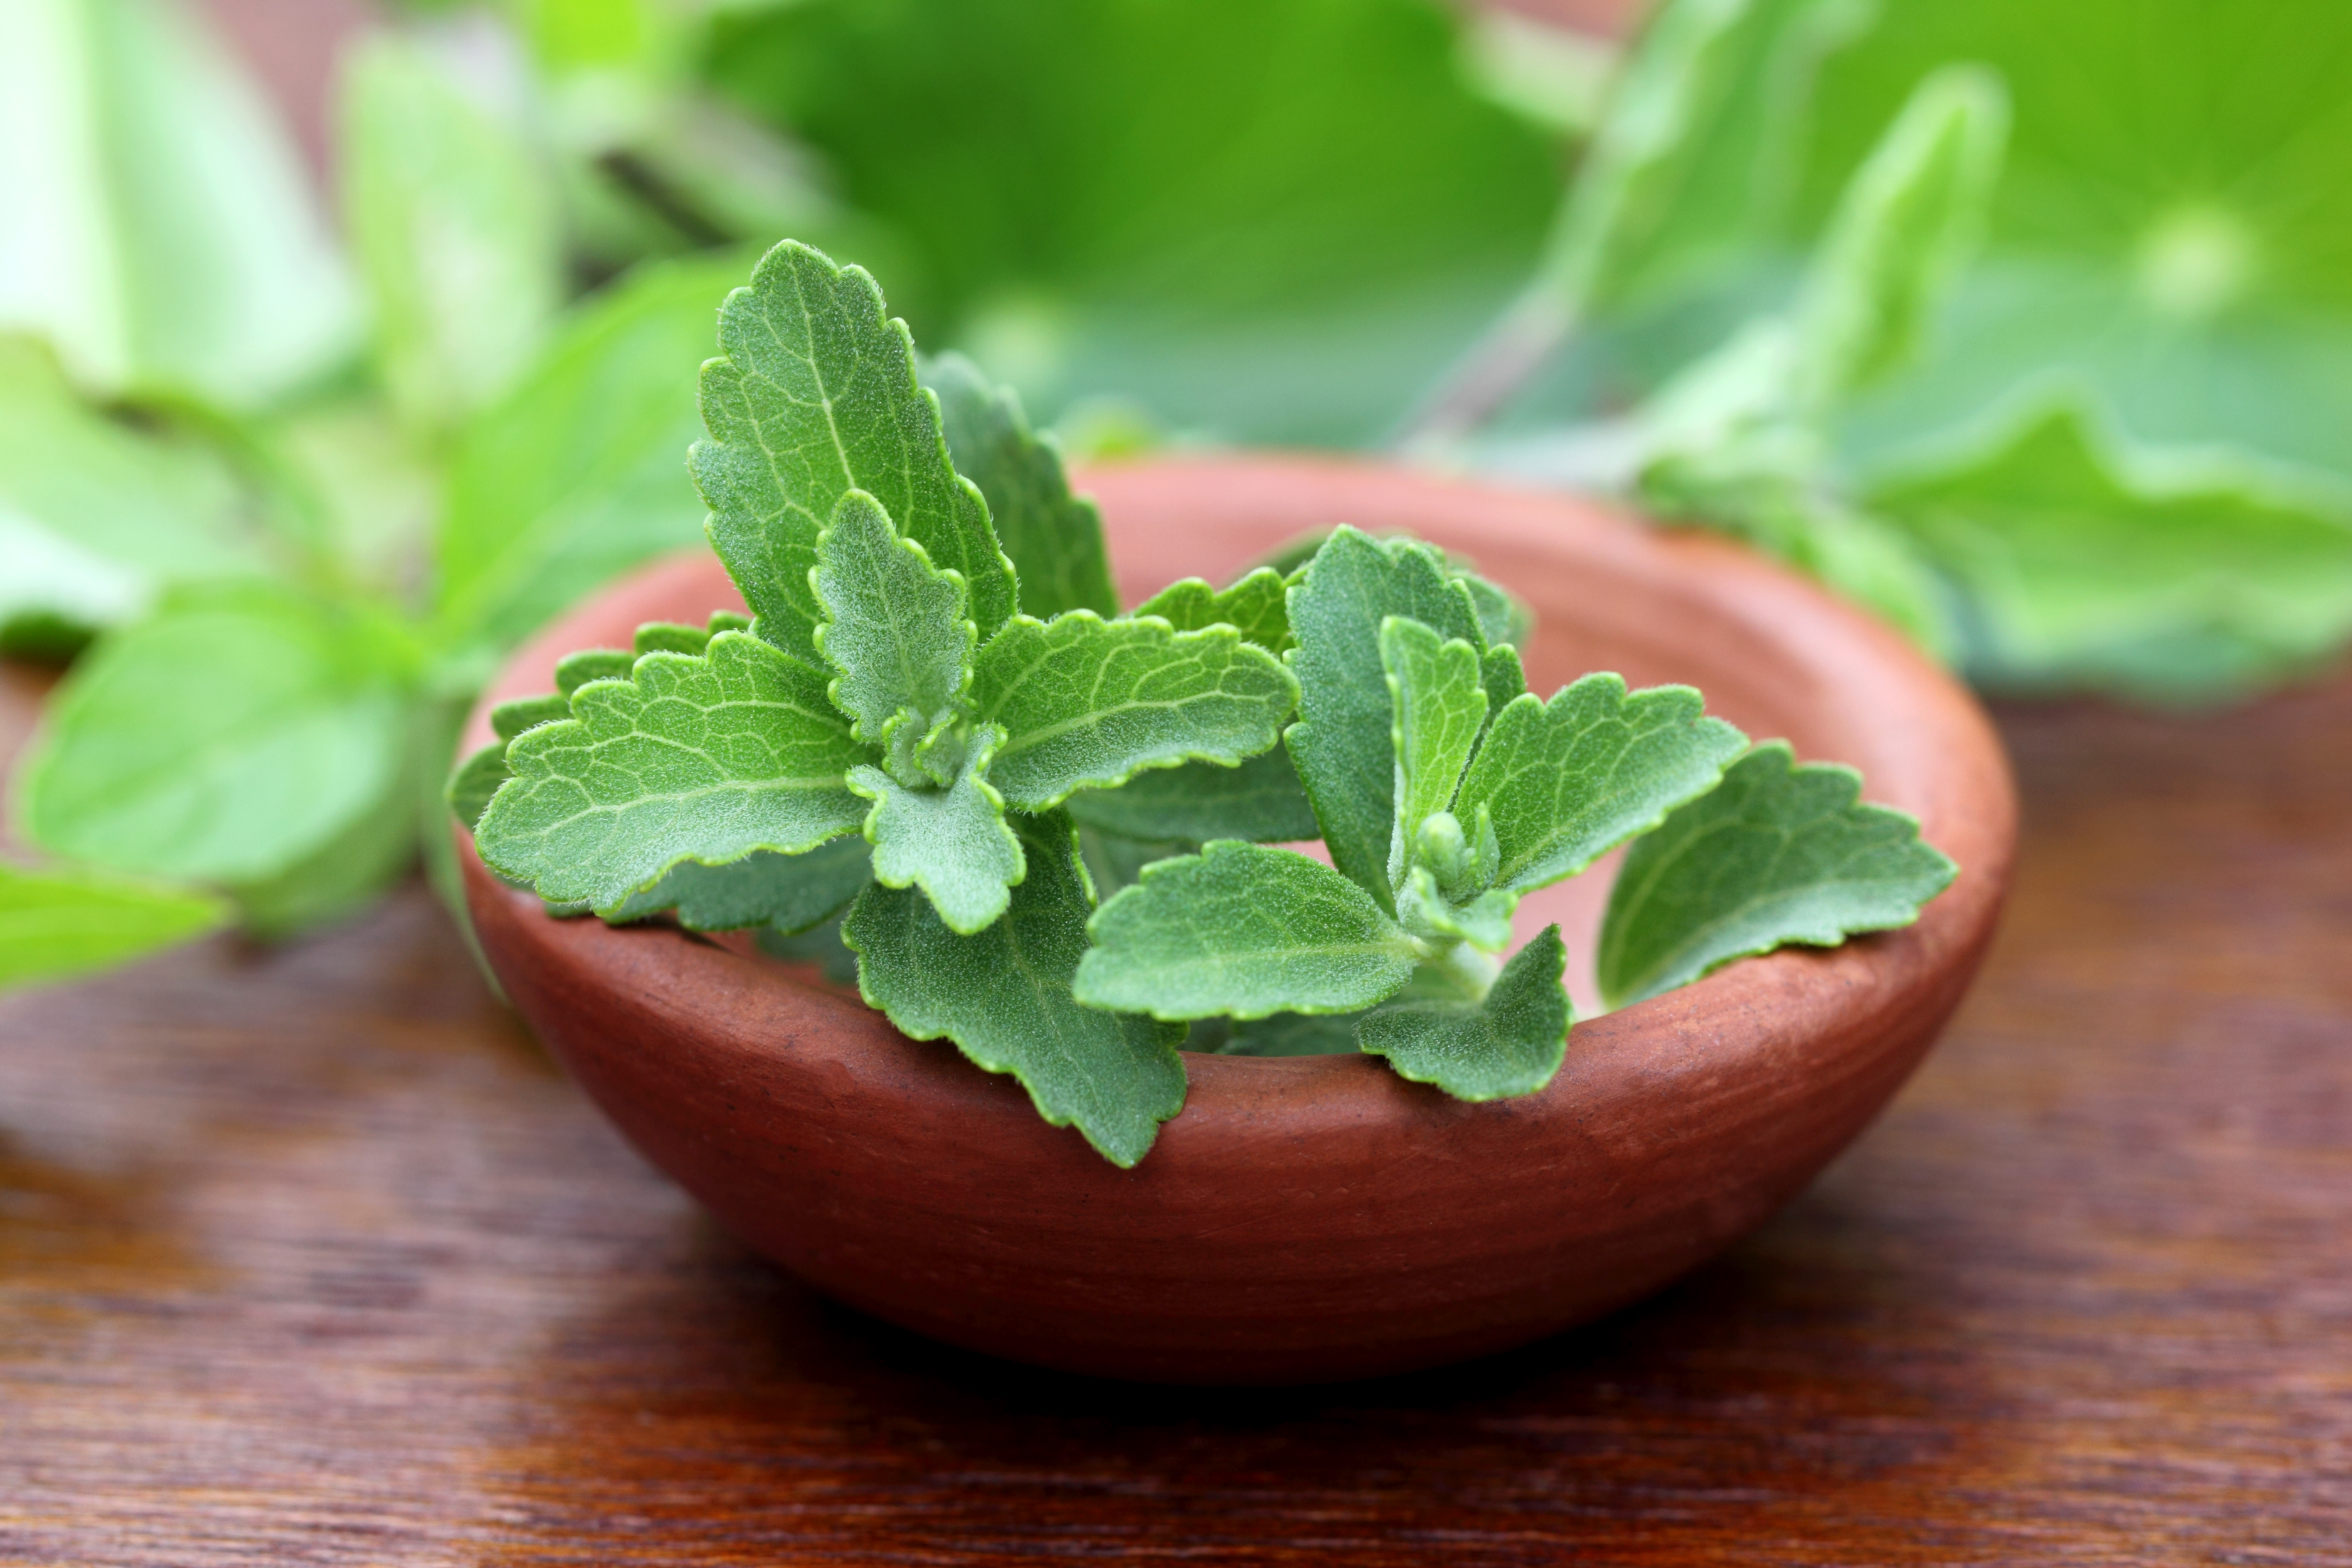 Beneficiile zahărului de stevia și rețete pentru un stil de viață sănătos